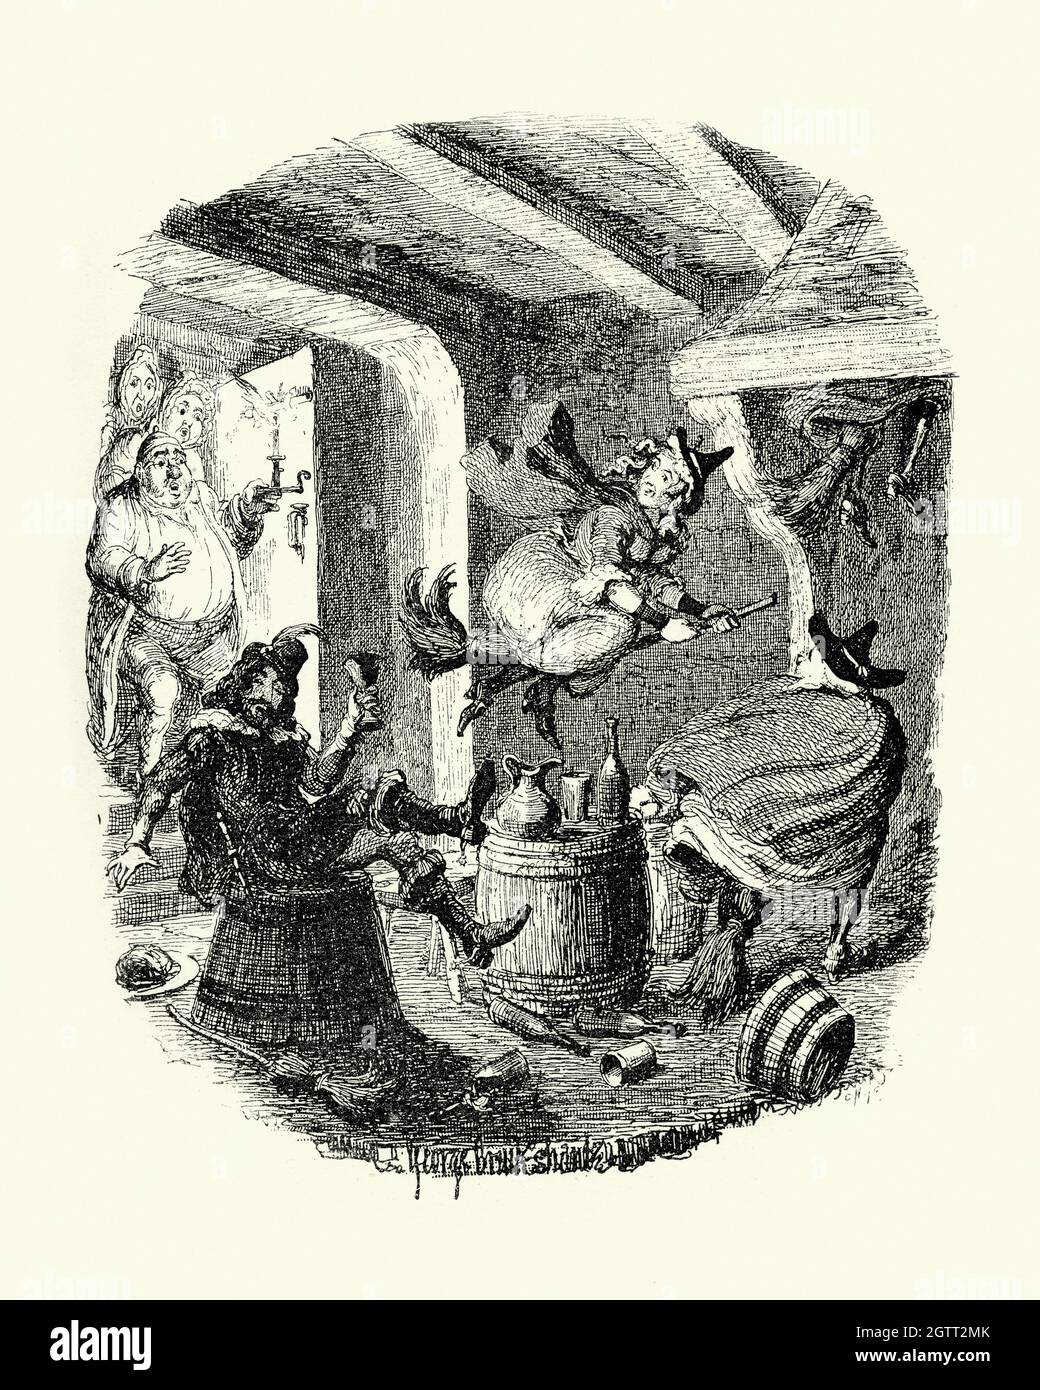 Illustration vintage l'histoire de Grandpapa ou la grenouille des sorcières des légendes d'Ingoldsby, sorcière volant sur bâton de poulet Banque D'Images